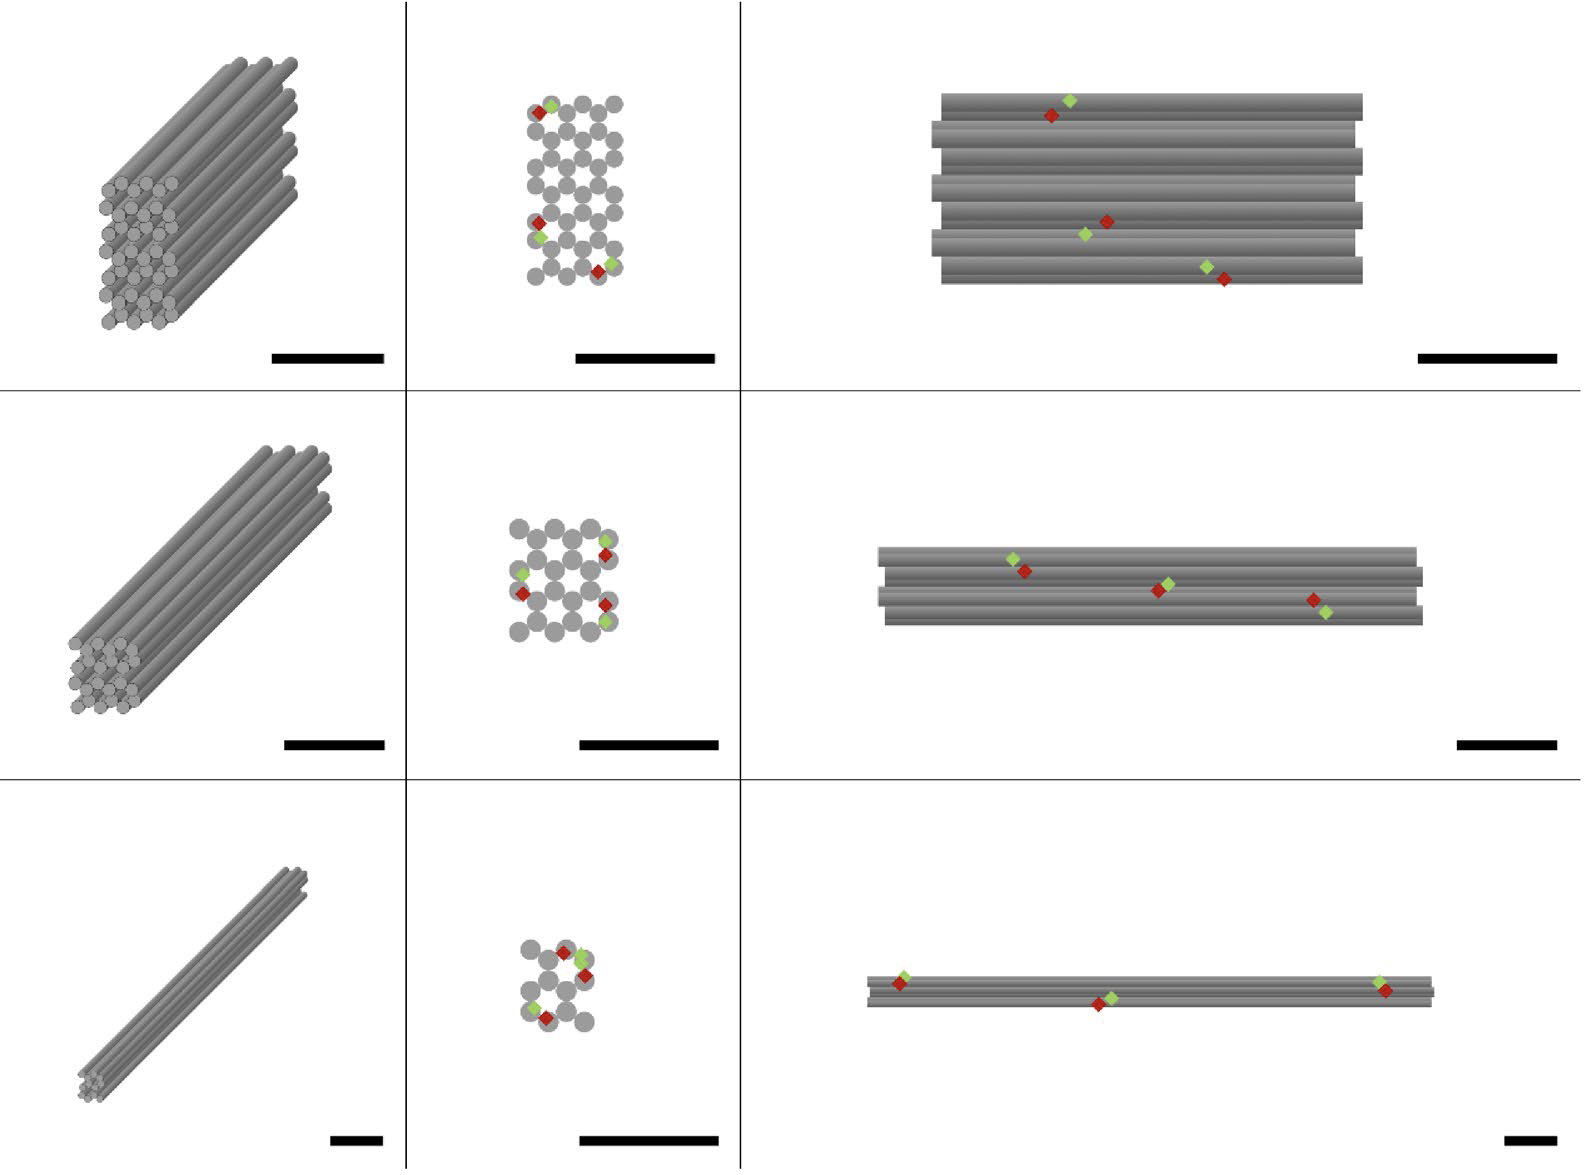 DNA折り紙ナノ構造の構造特性評価とそのアセンブリの品質評価